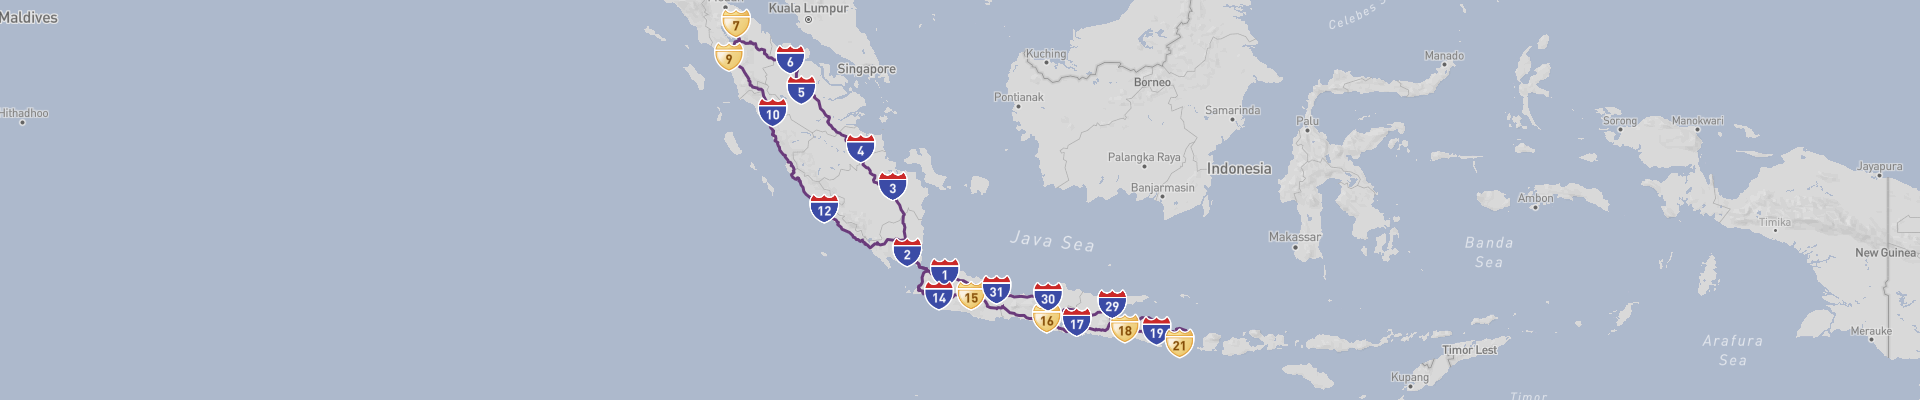 Itinéraire Indonesia 